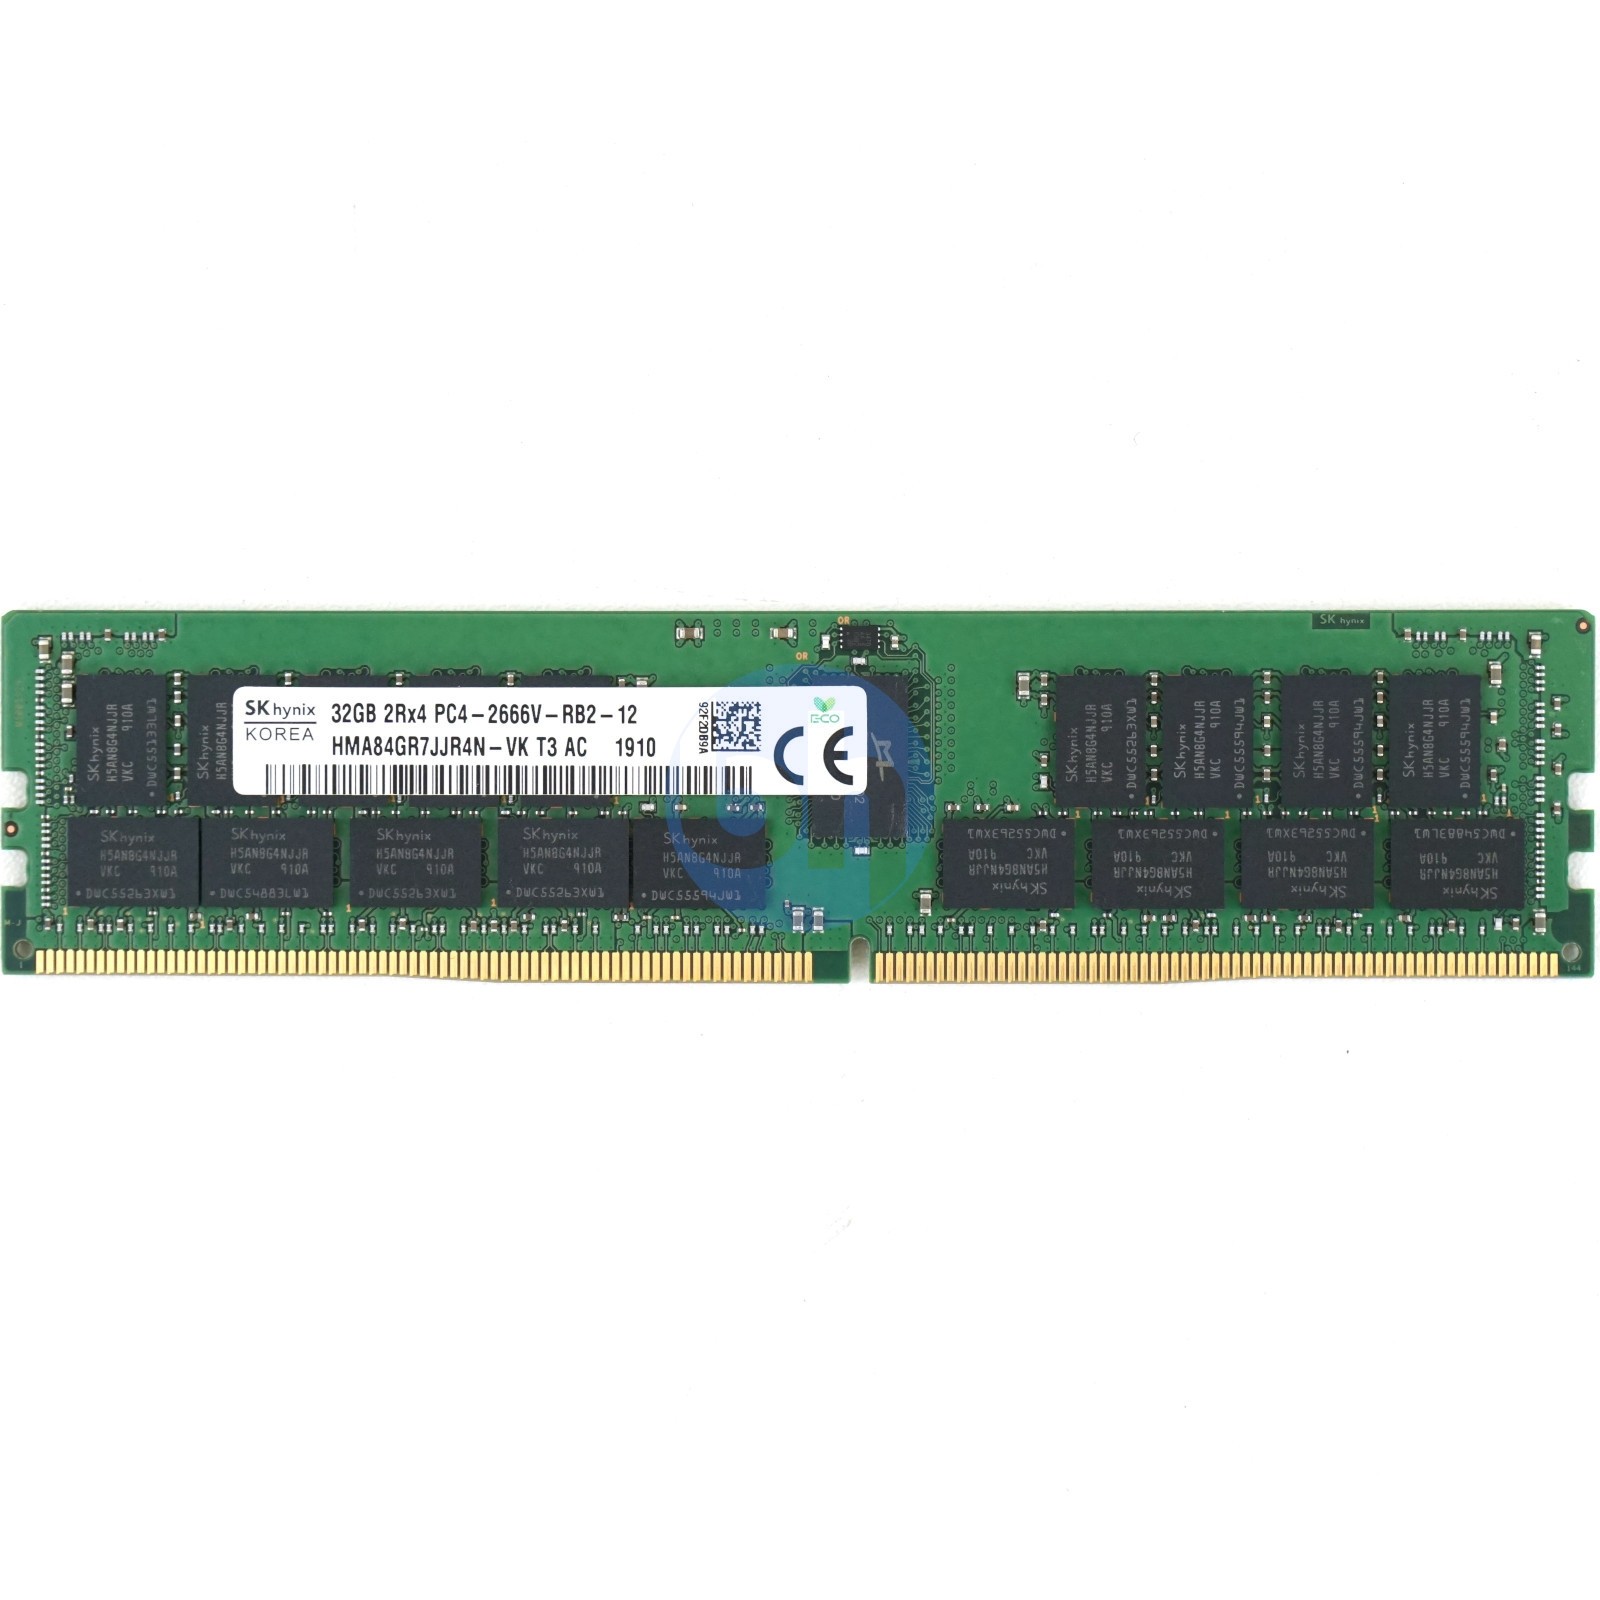 HMA84GR7AFR4N-VK Hynix - 32GB PC4-21300V-R (DDR4-2666MHz, 2RX4) 